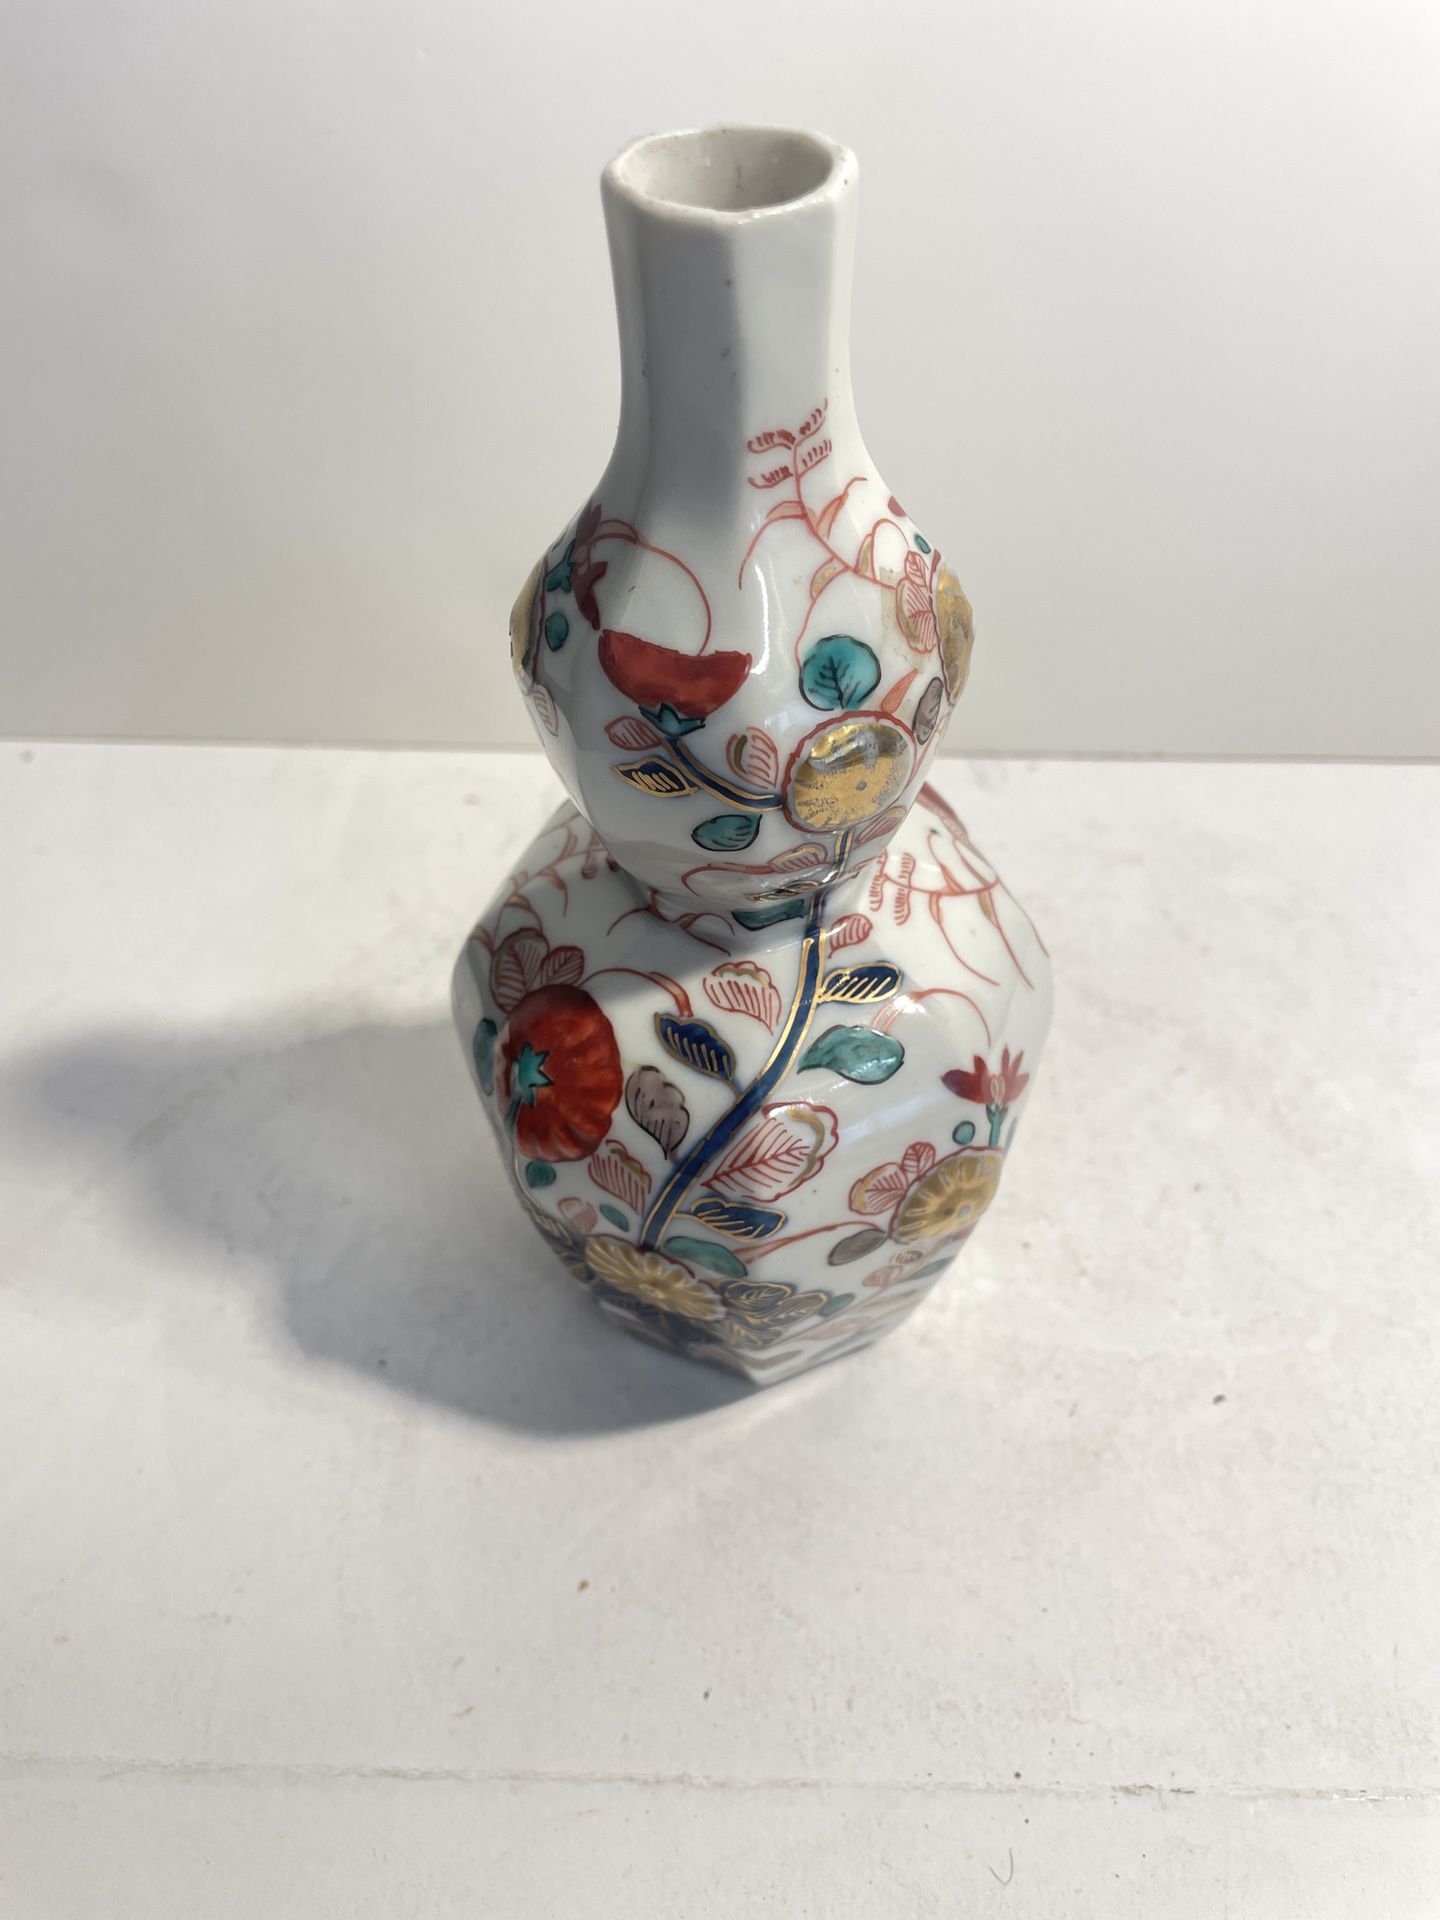 Vantage Japanese porcelain vase